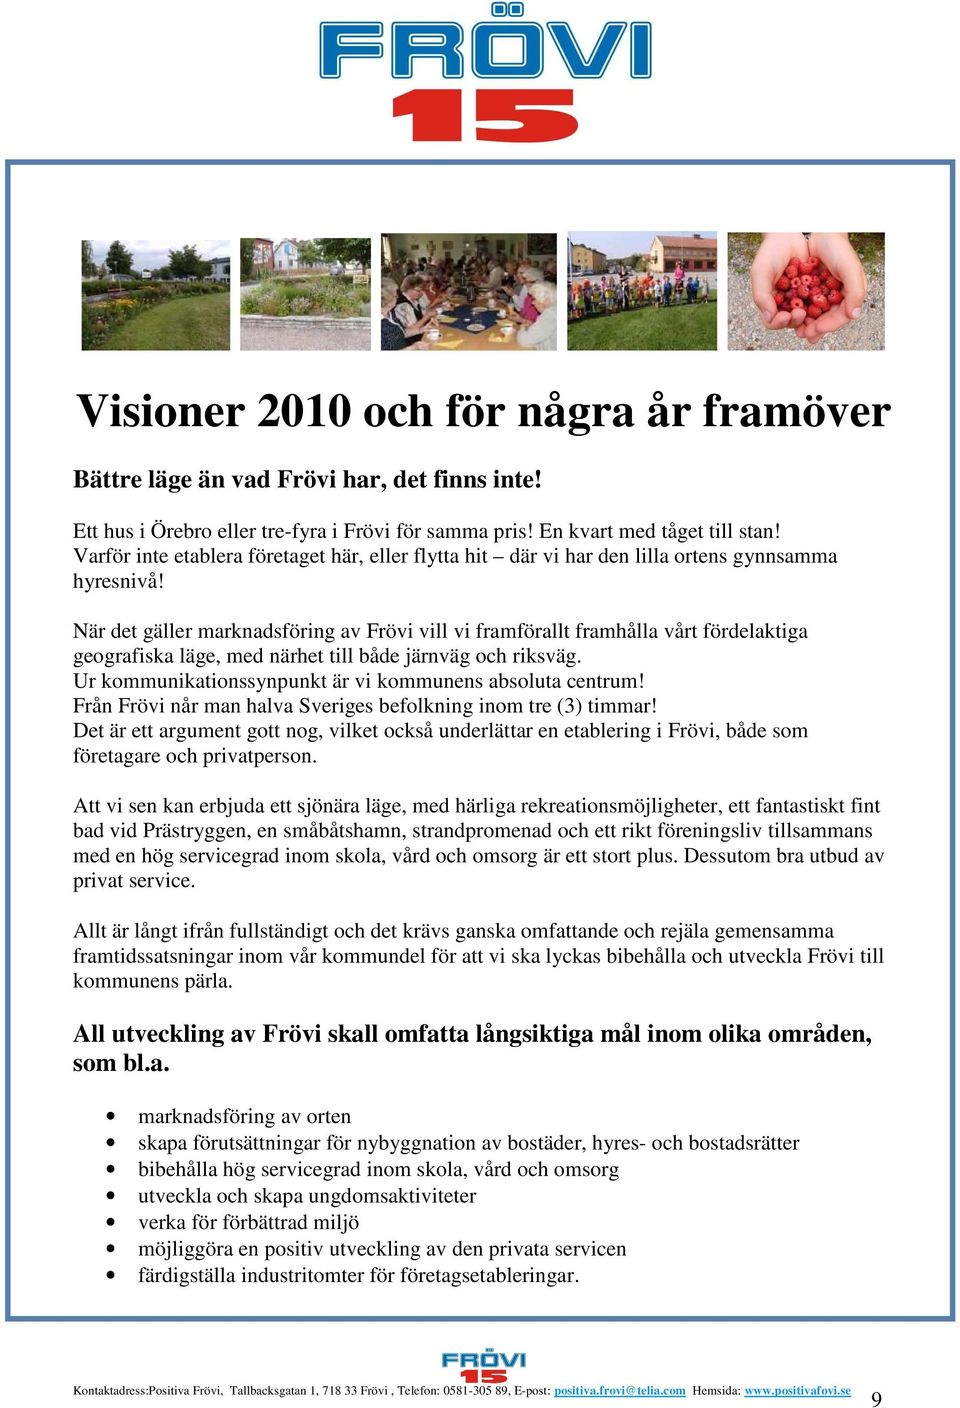 Kvinna Söker Man Frövi - Singlar i degerfors / Göta dating sites